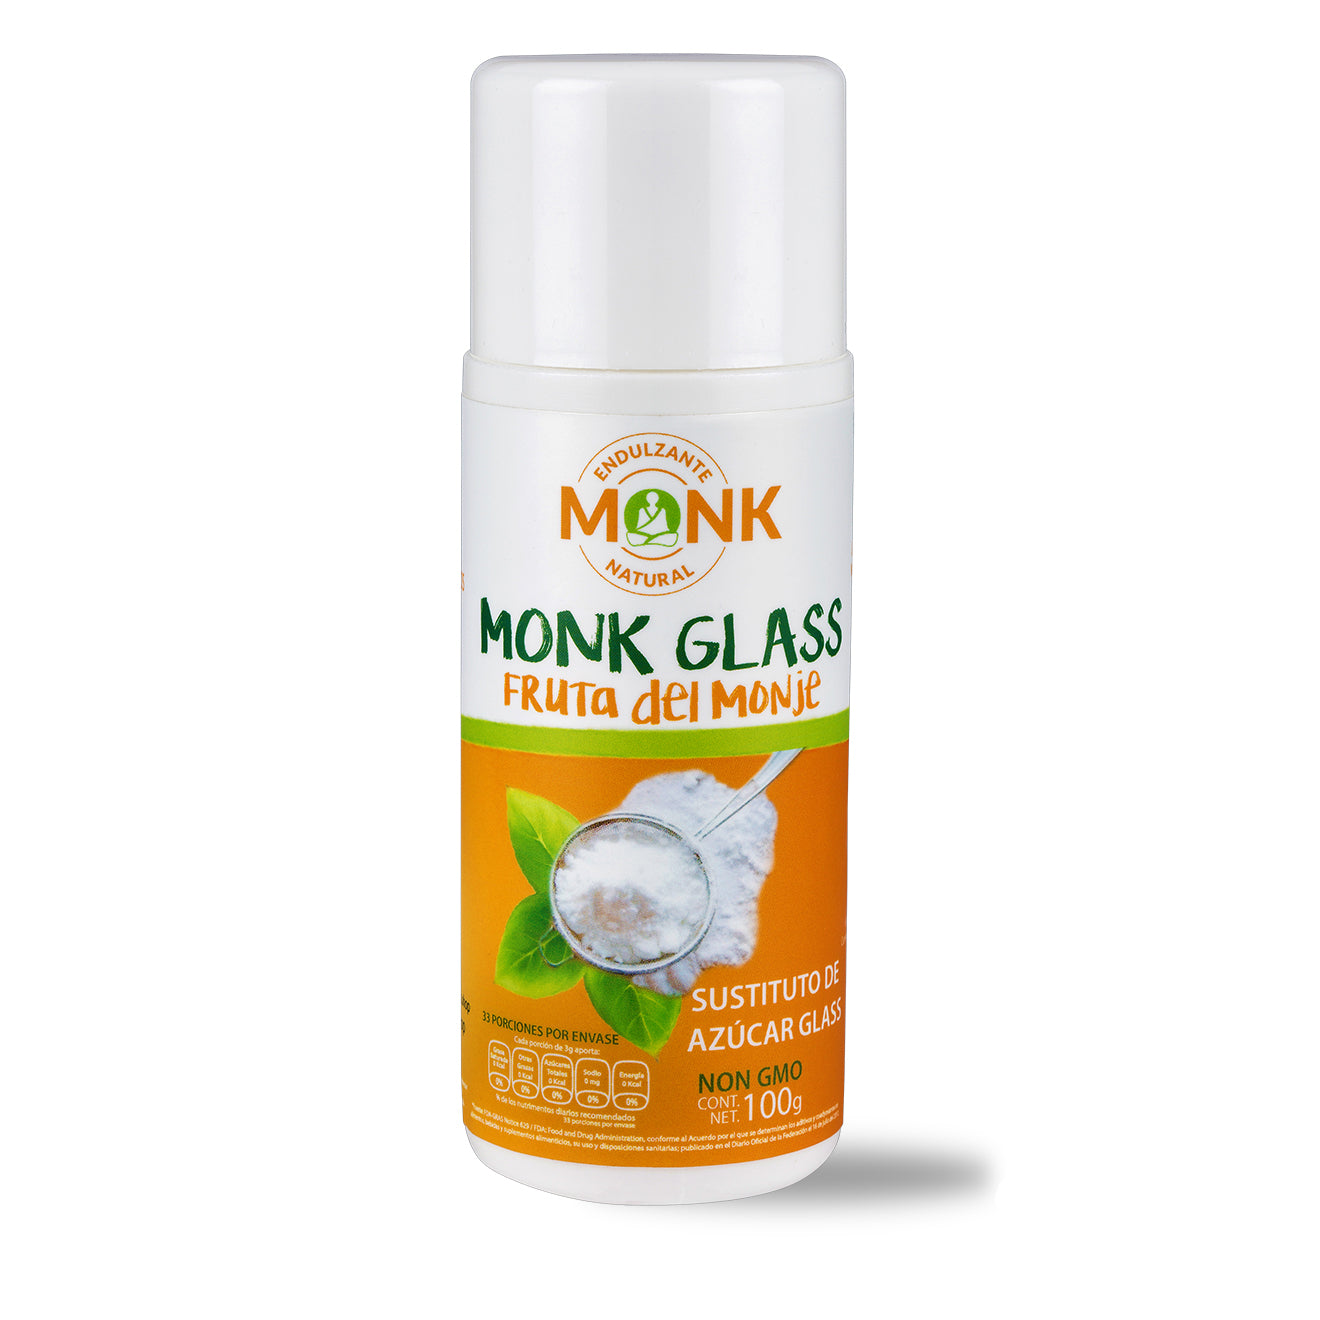 Monk -Fruto del monje estilo glass